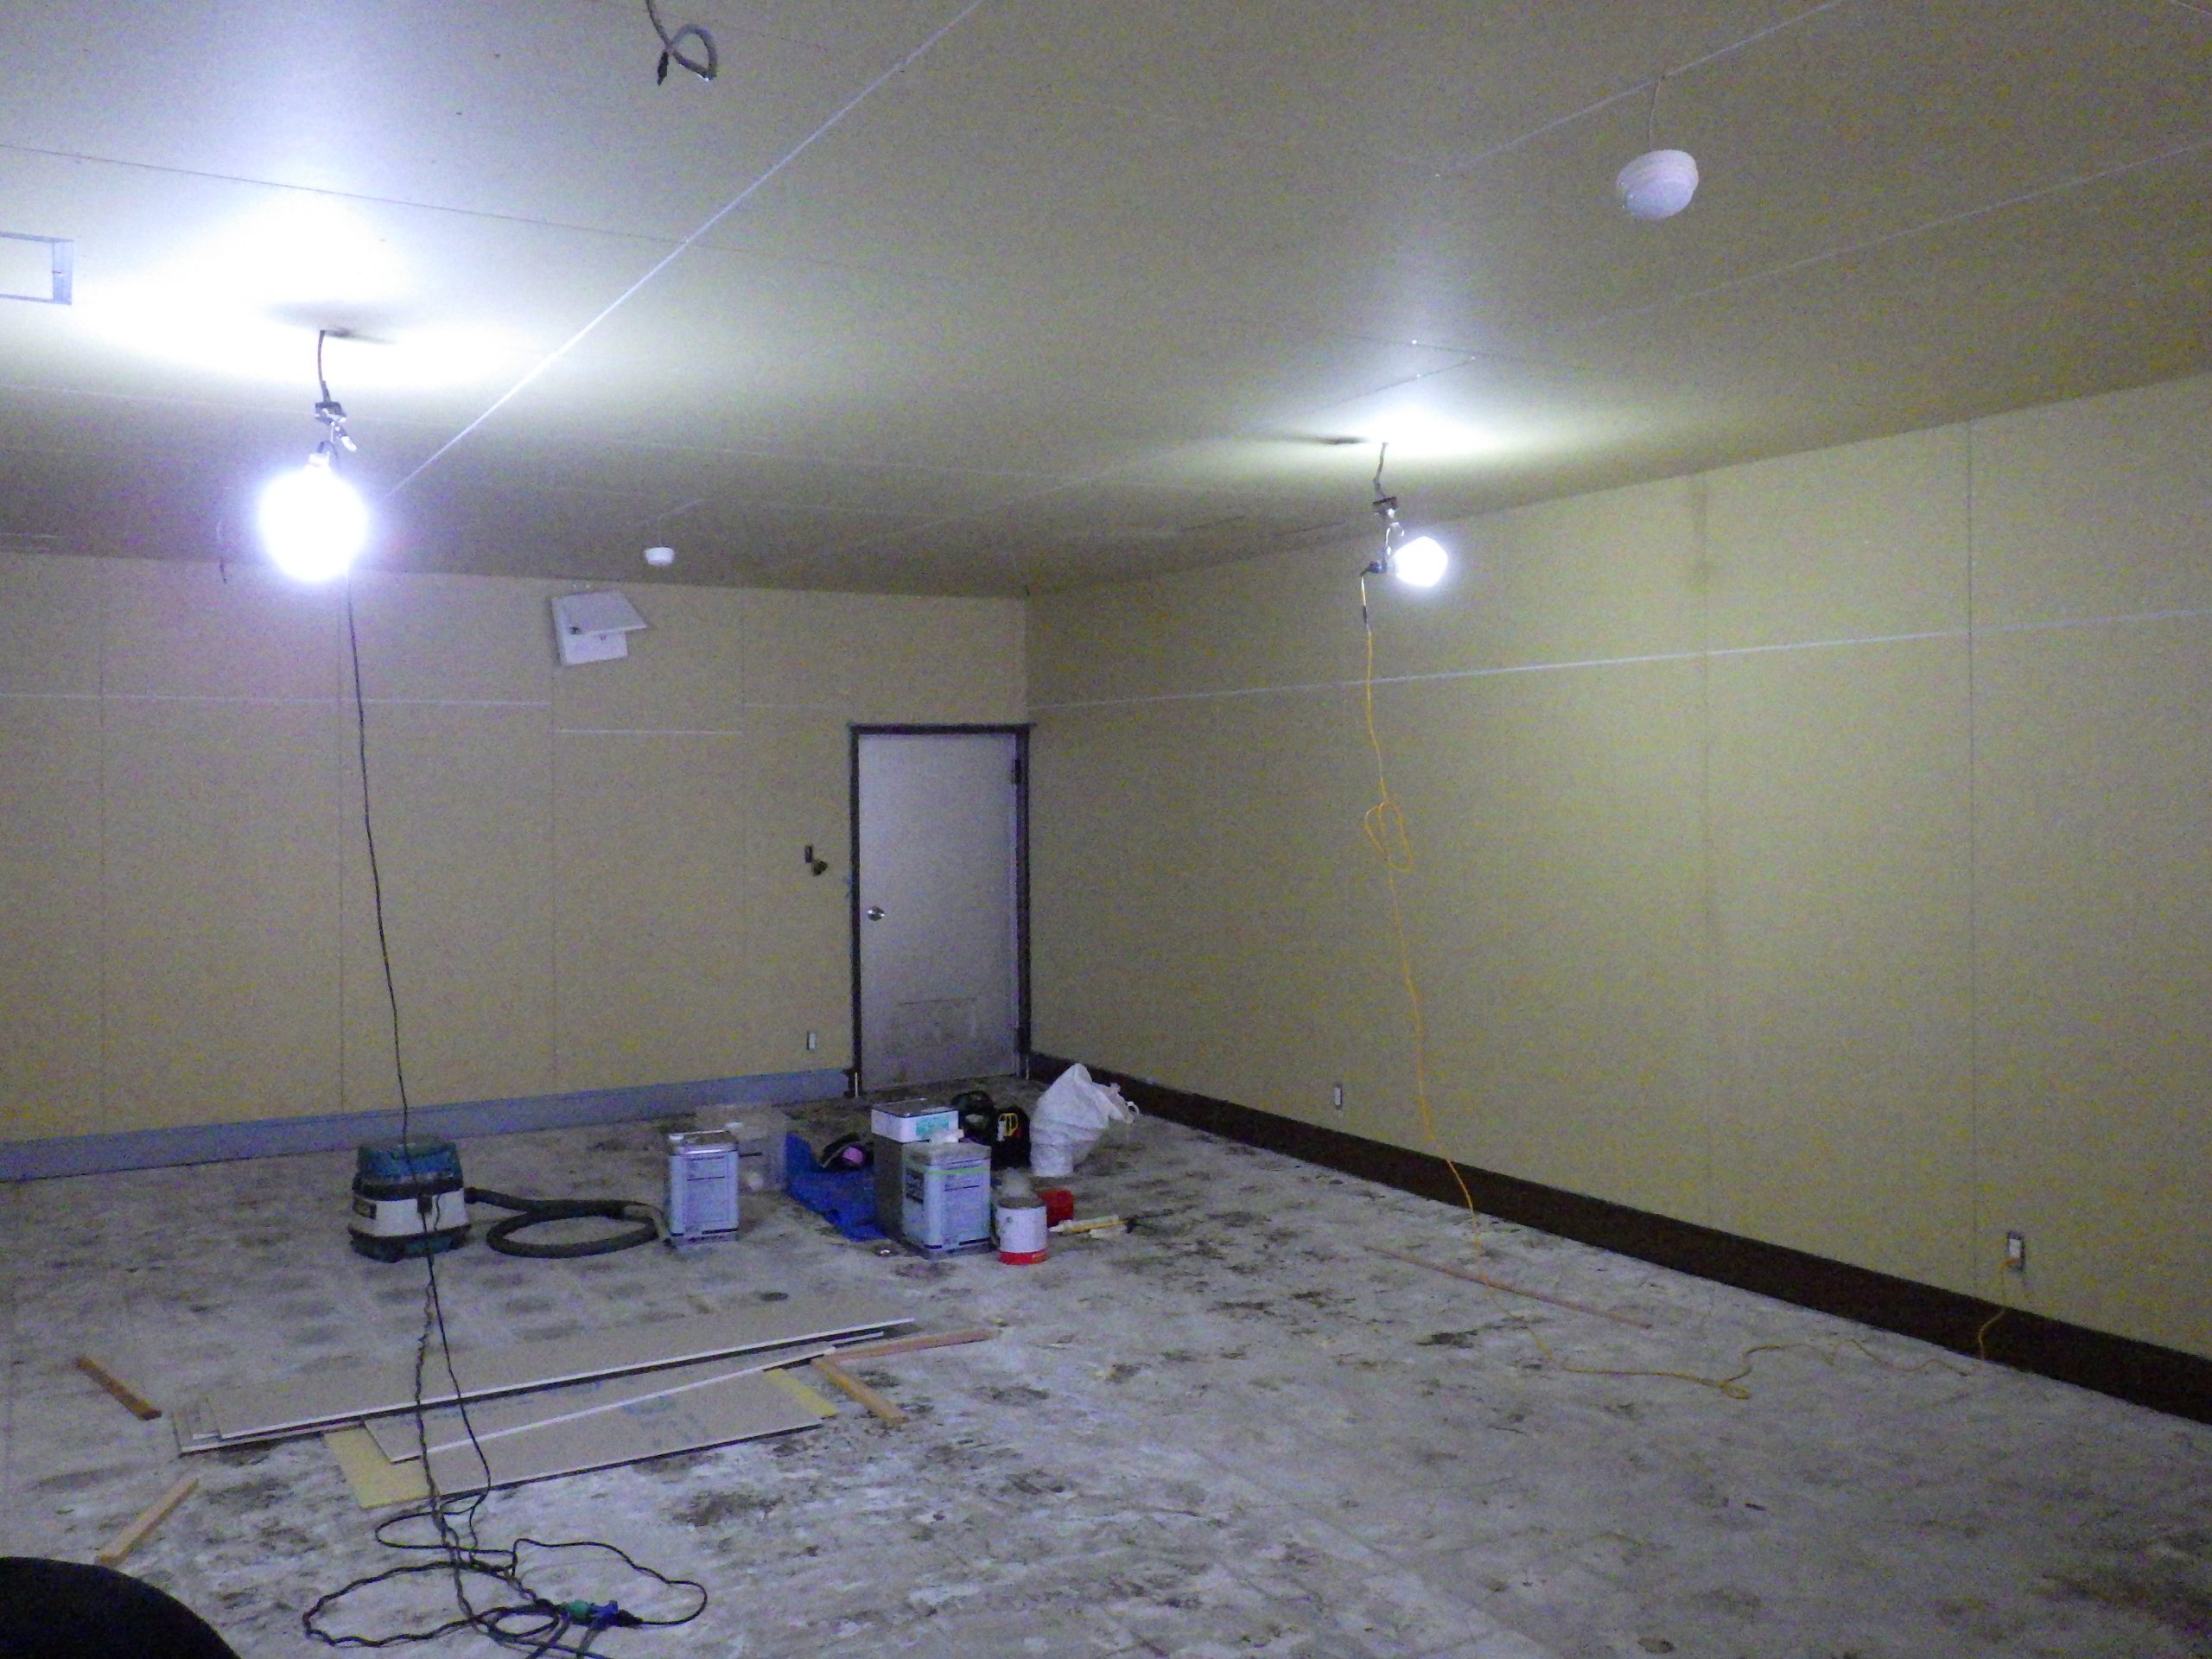 【天井・壁・床 工事状況】
壁は石膏ボードを上貼りです。
床のPタイルは撤去です。